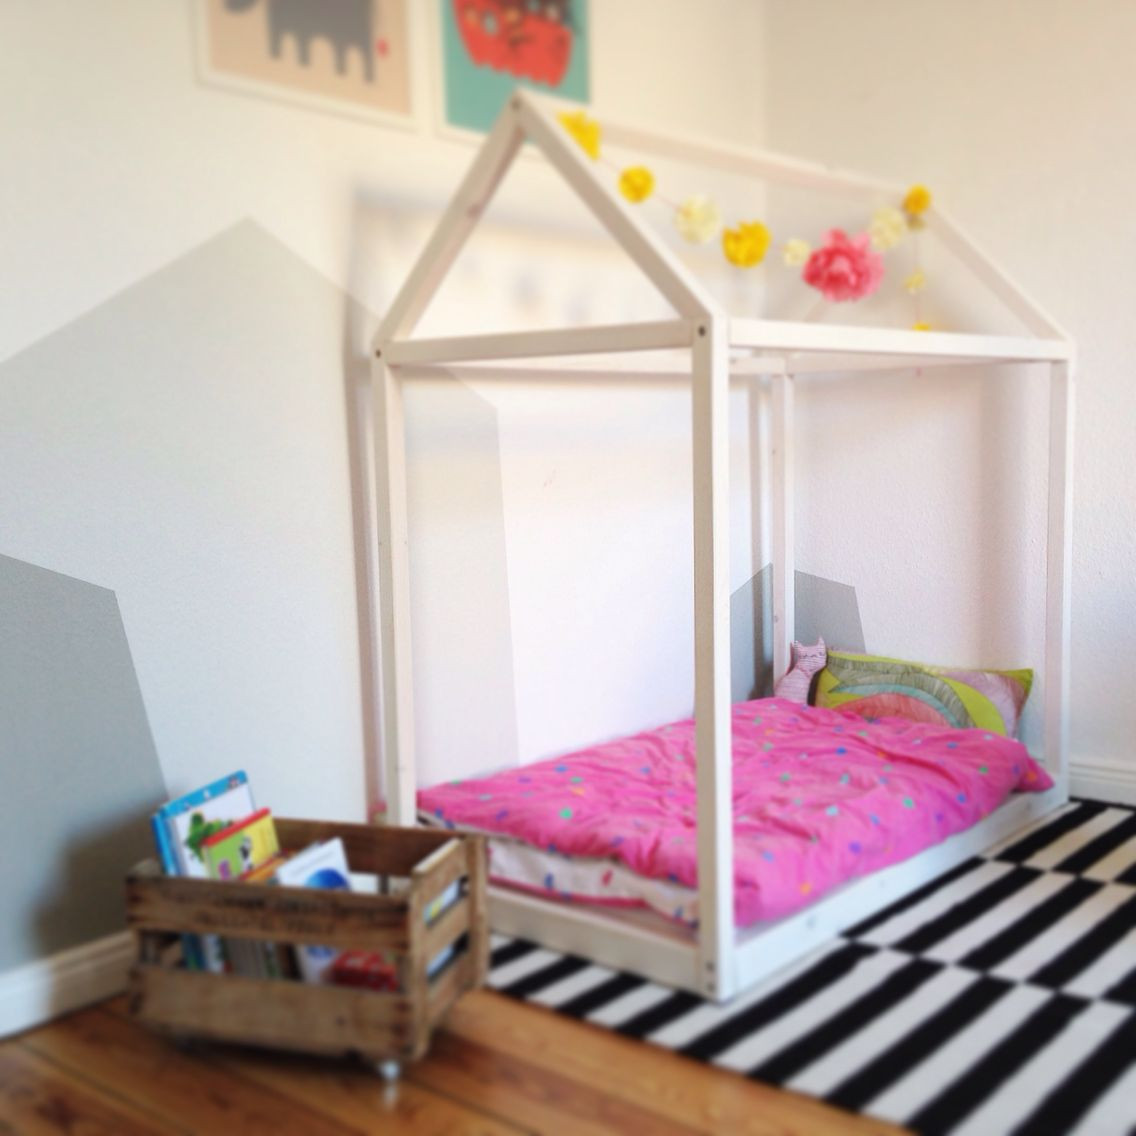 Kinderbett Diy
 DIY Kinderzimmer Haus Kinderbett Holz